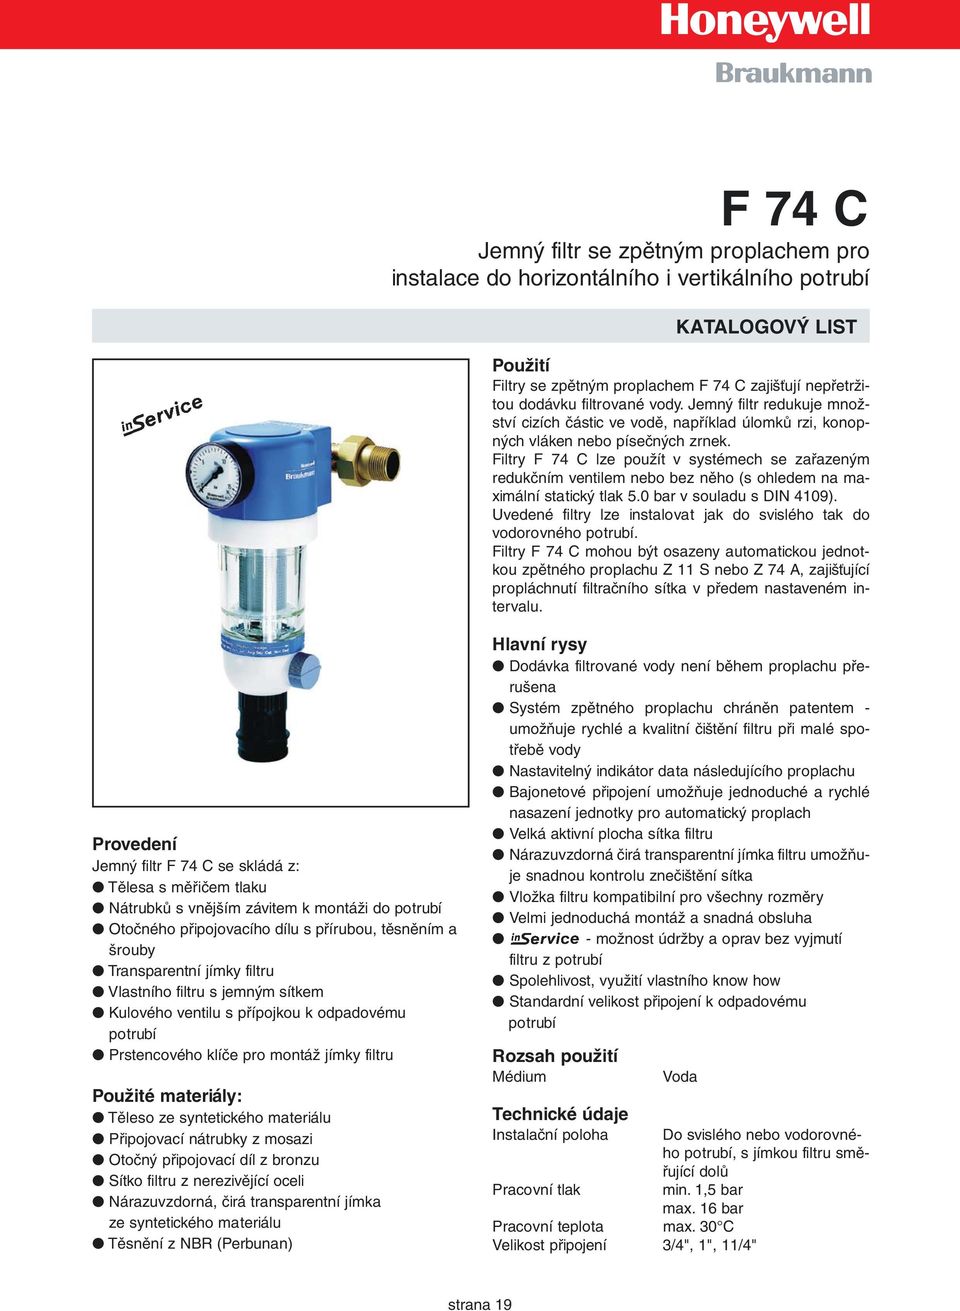 Filtry F 74 C lze použít v systémech se zařazeným redukčním ventilem nebo bez něho (s ohledem na maximální statický tlak 5.0 bar v souladu s DIN 4109).